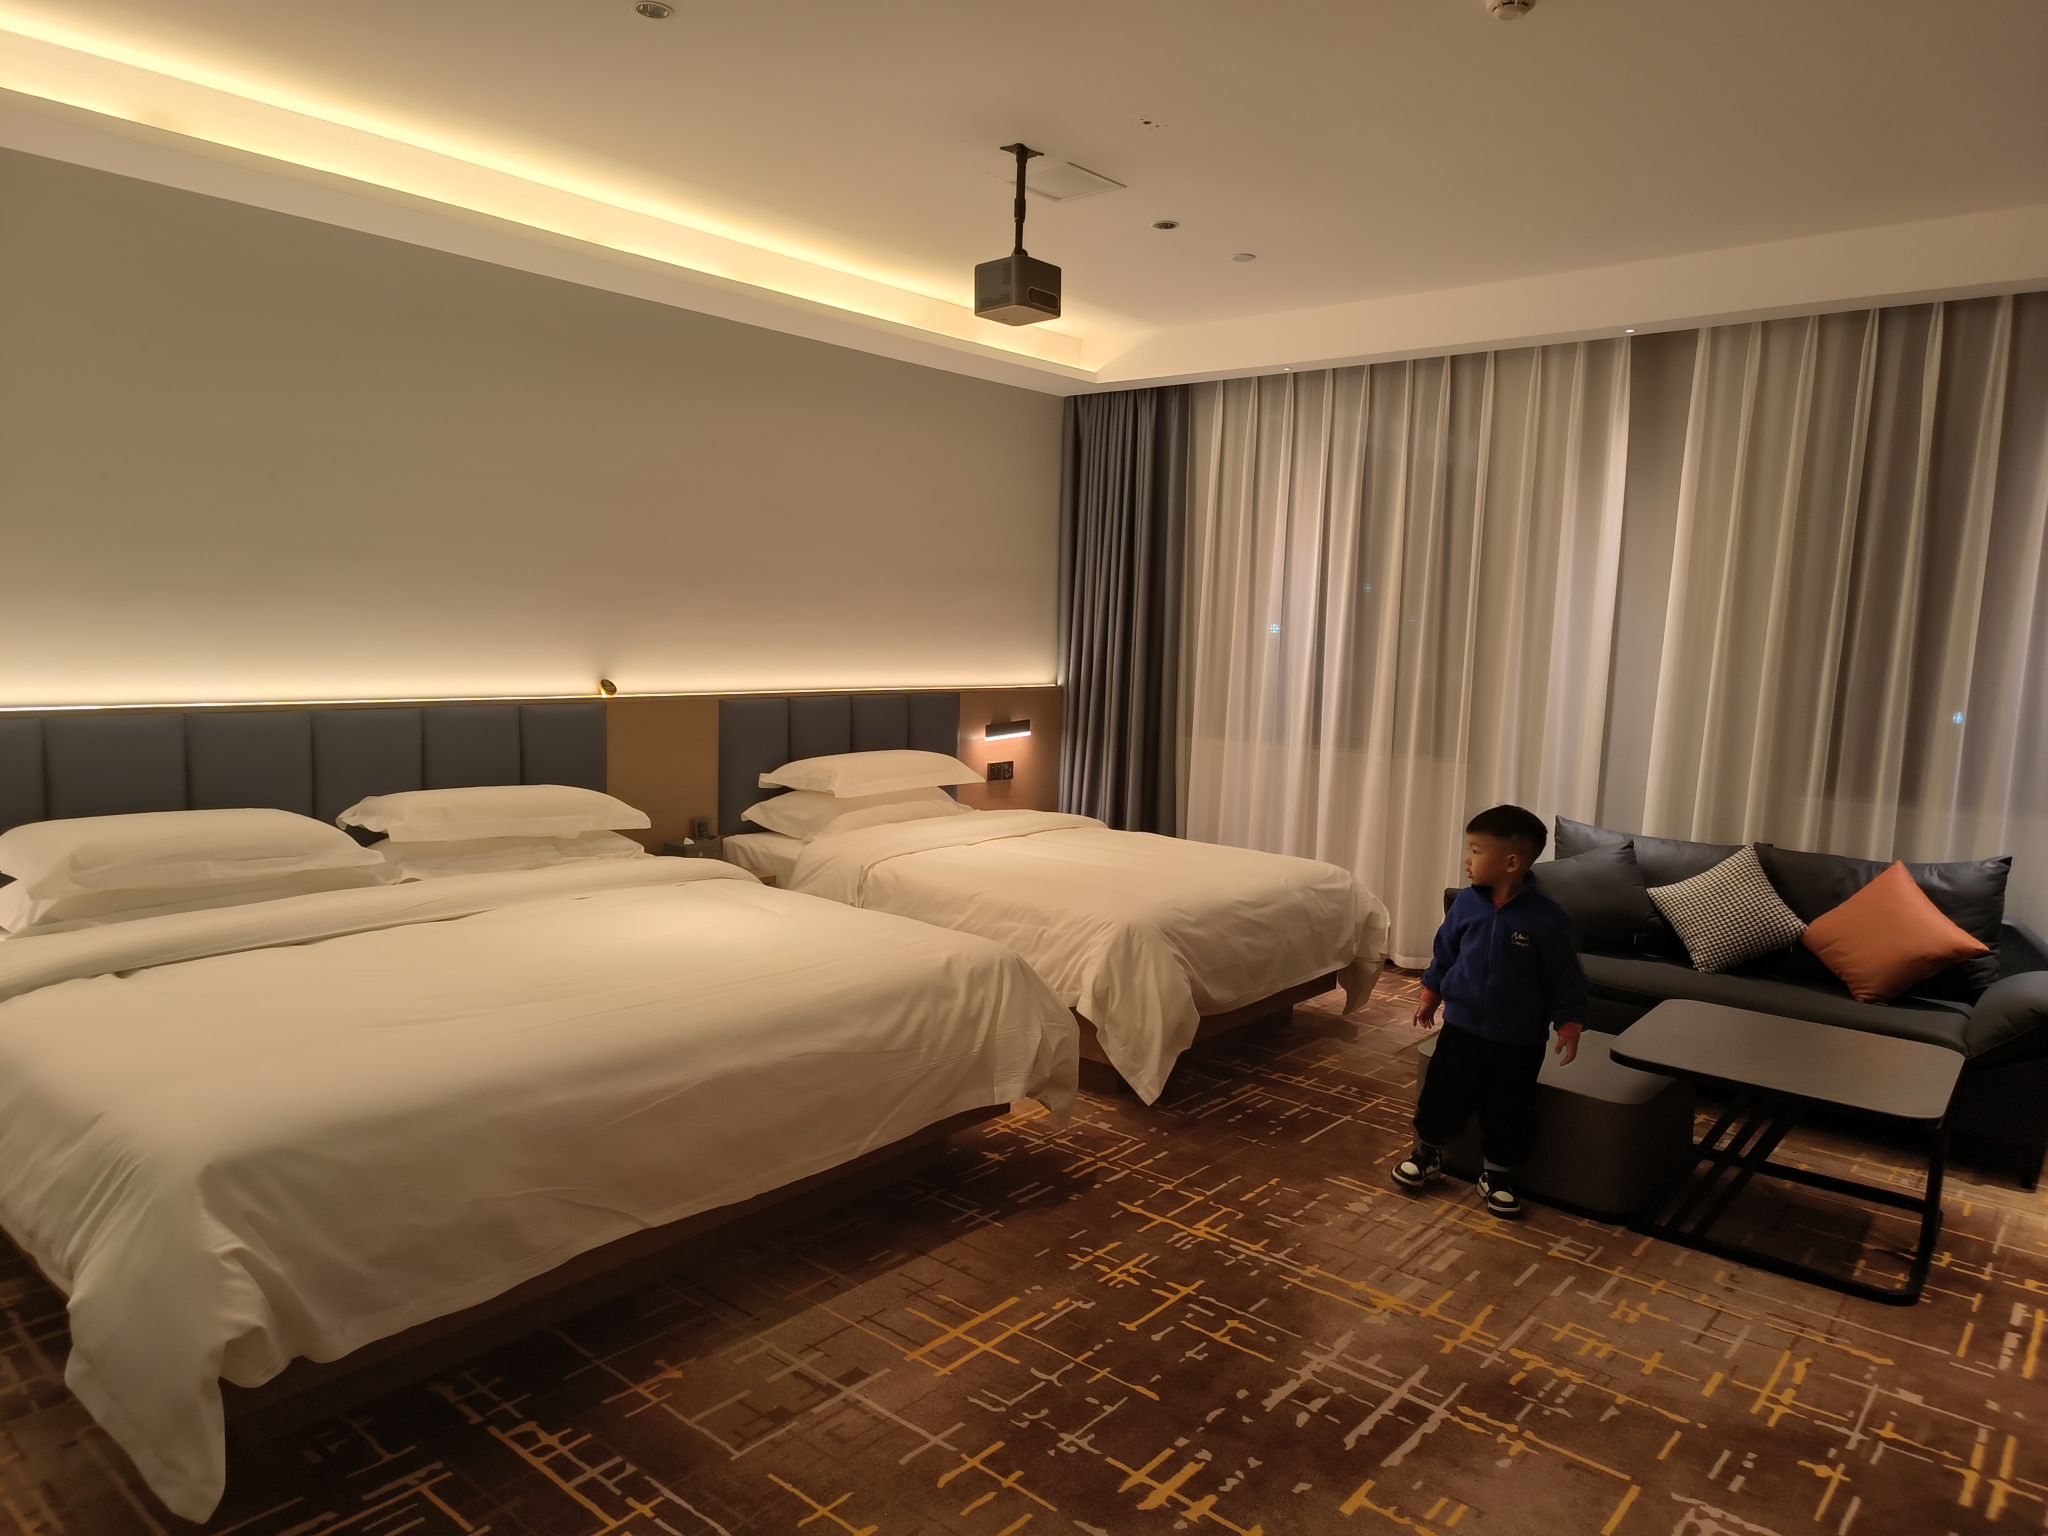 房间空间很大，住着畅快，而且是全屋智能化，装饰细节精致时尚，新酒店无异味，床品面料柔软舒适，卫生也好